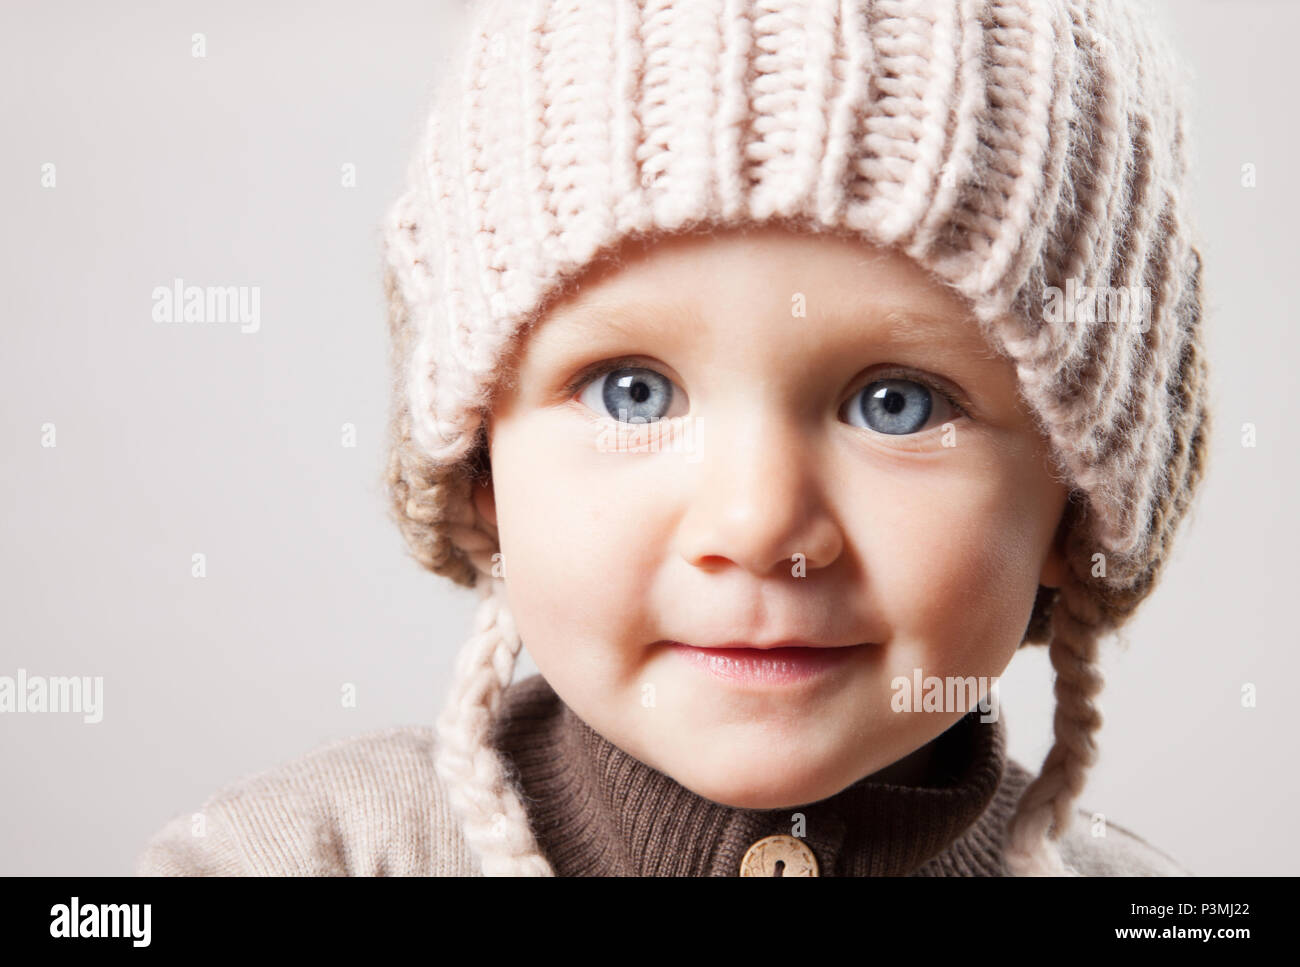 Portrait of a cute baby girl dans un immense chapeau tricoté marron. Isolé sur fond blanc. Banque D'Images